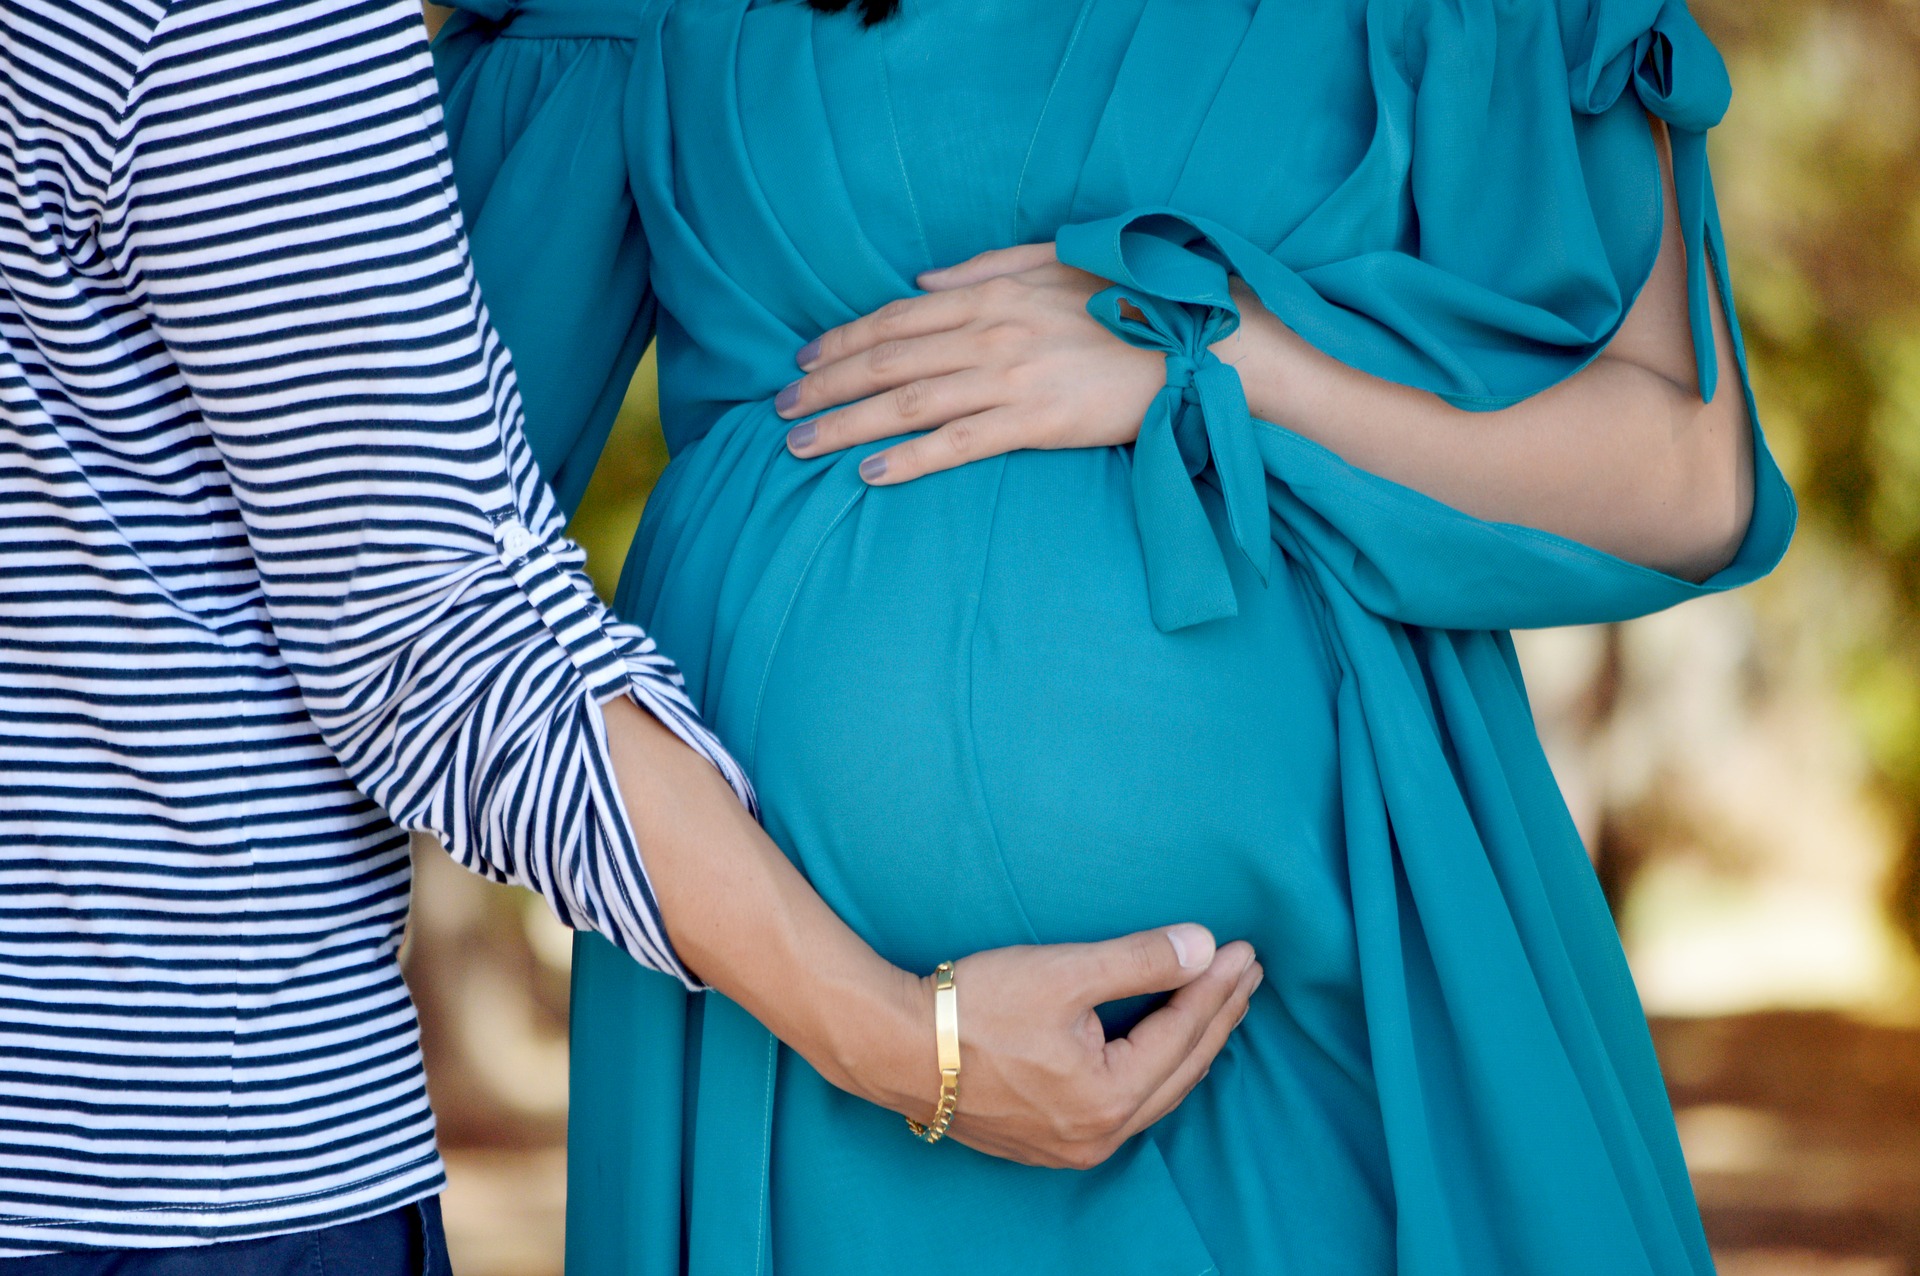 14 міфів про вагітності, в які до цих пір багато хто вірять  